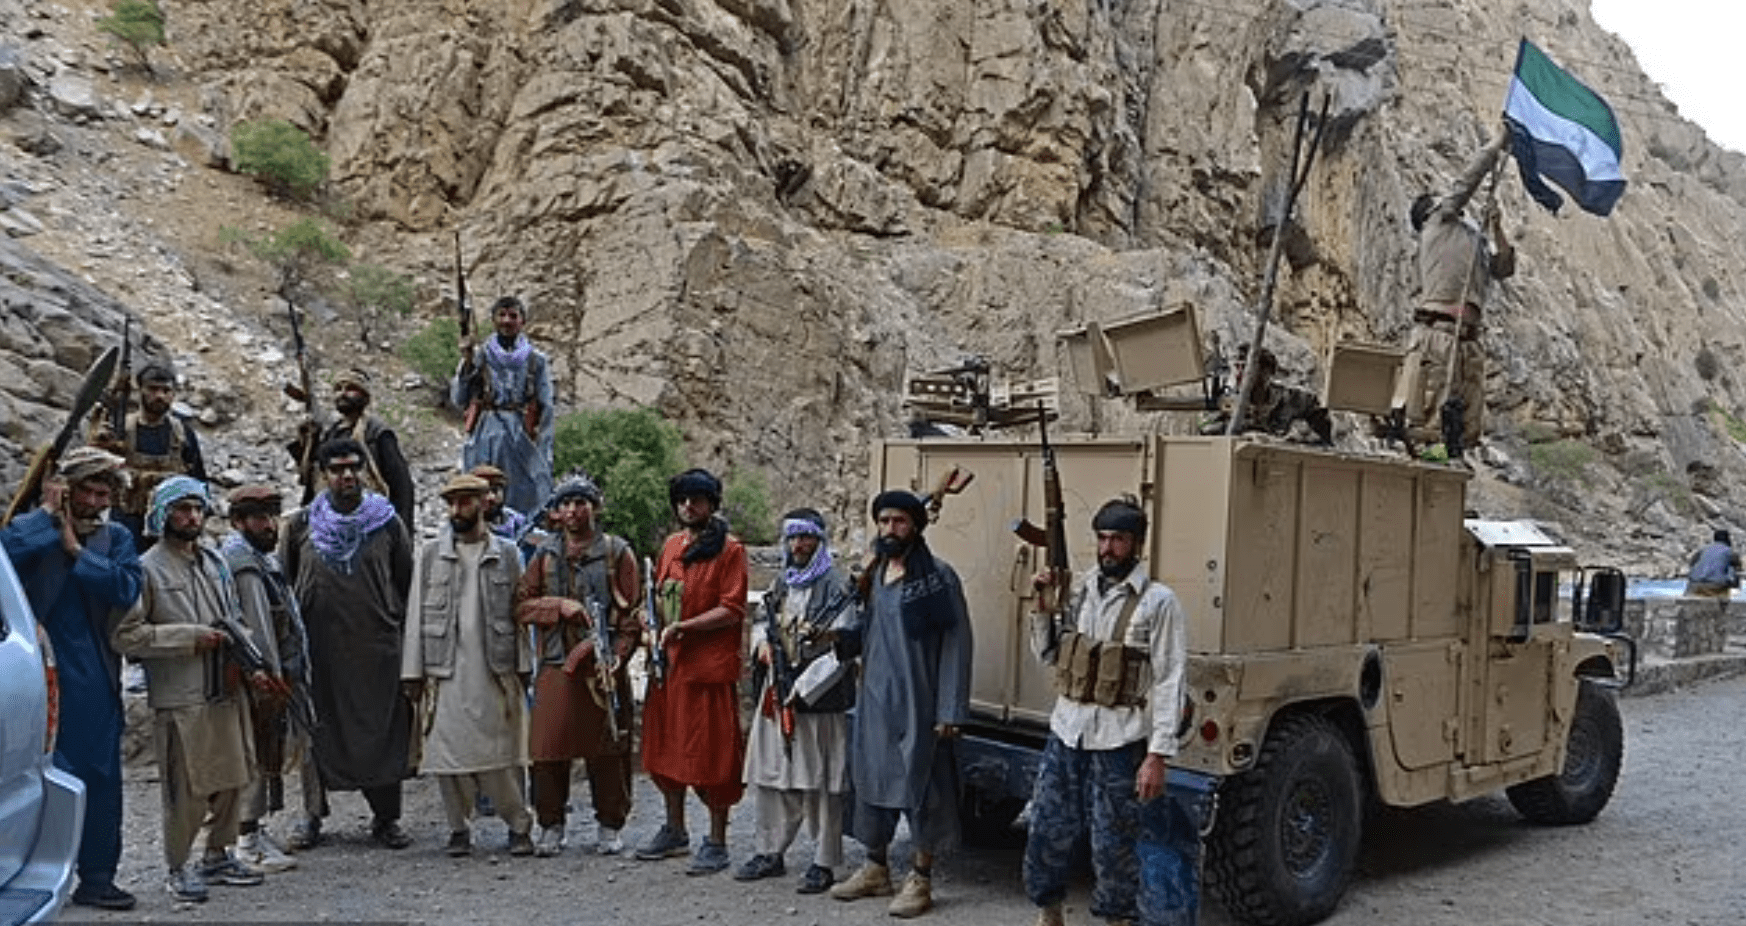 精良美式装备的塔利班粉碎潘杰希尔山谷阿富汗反抗军最后阵地